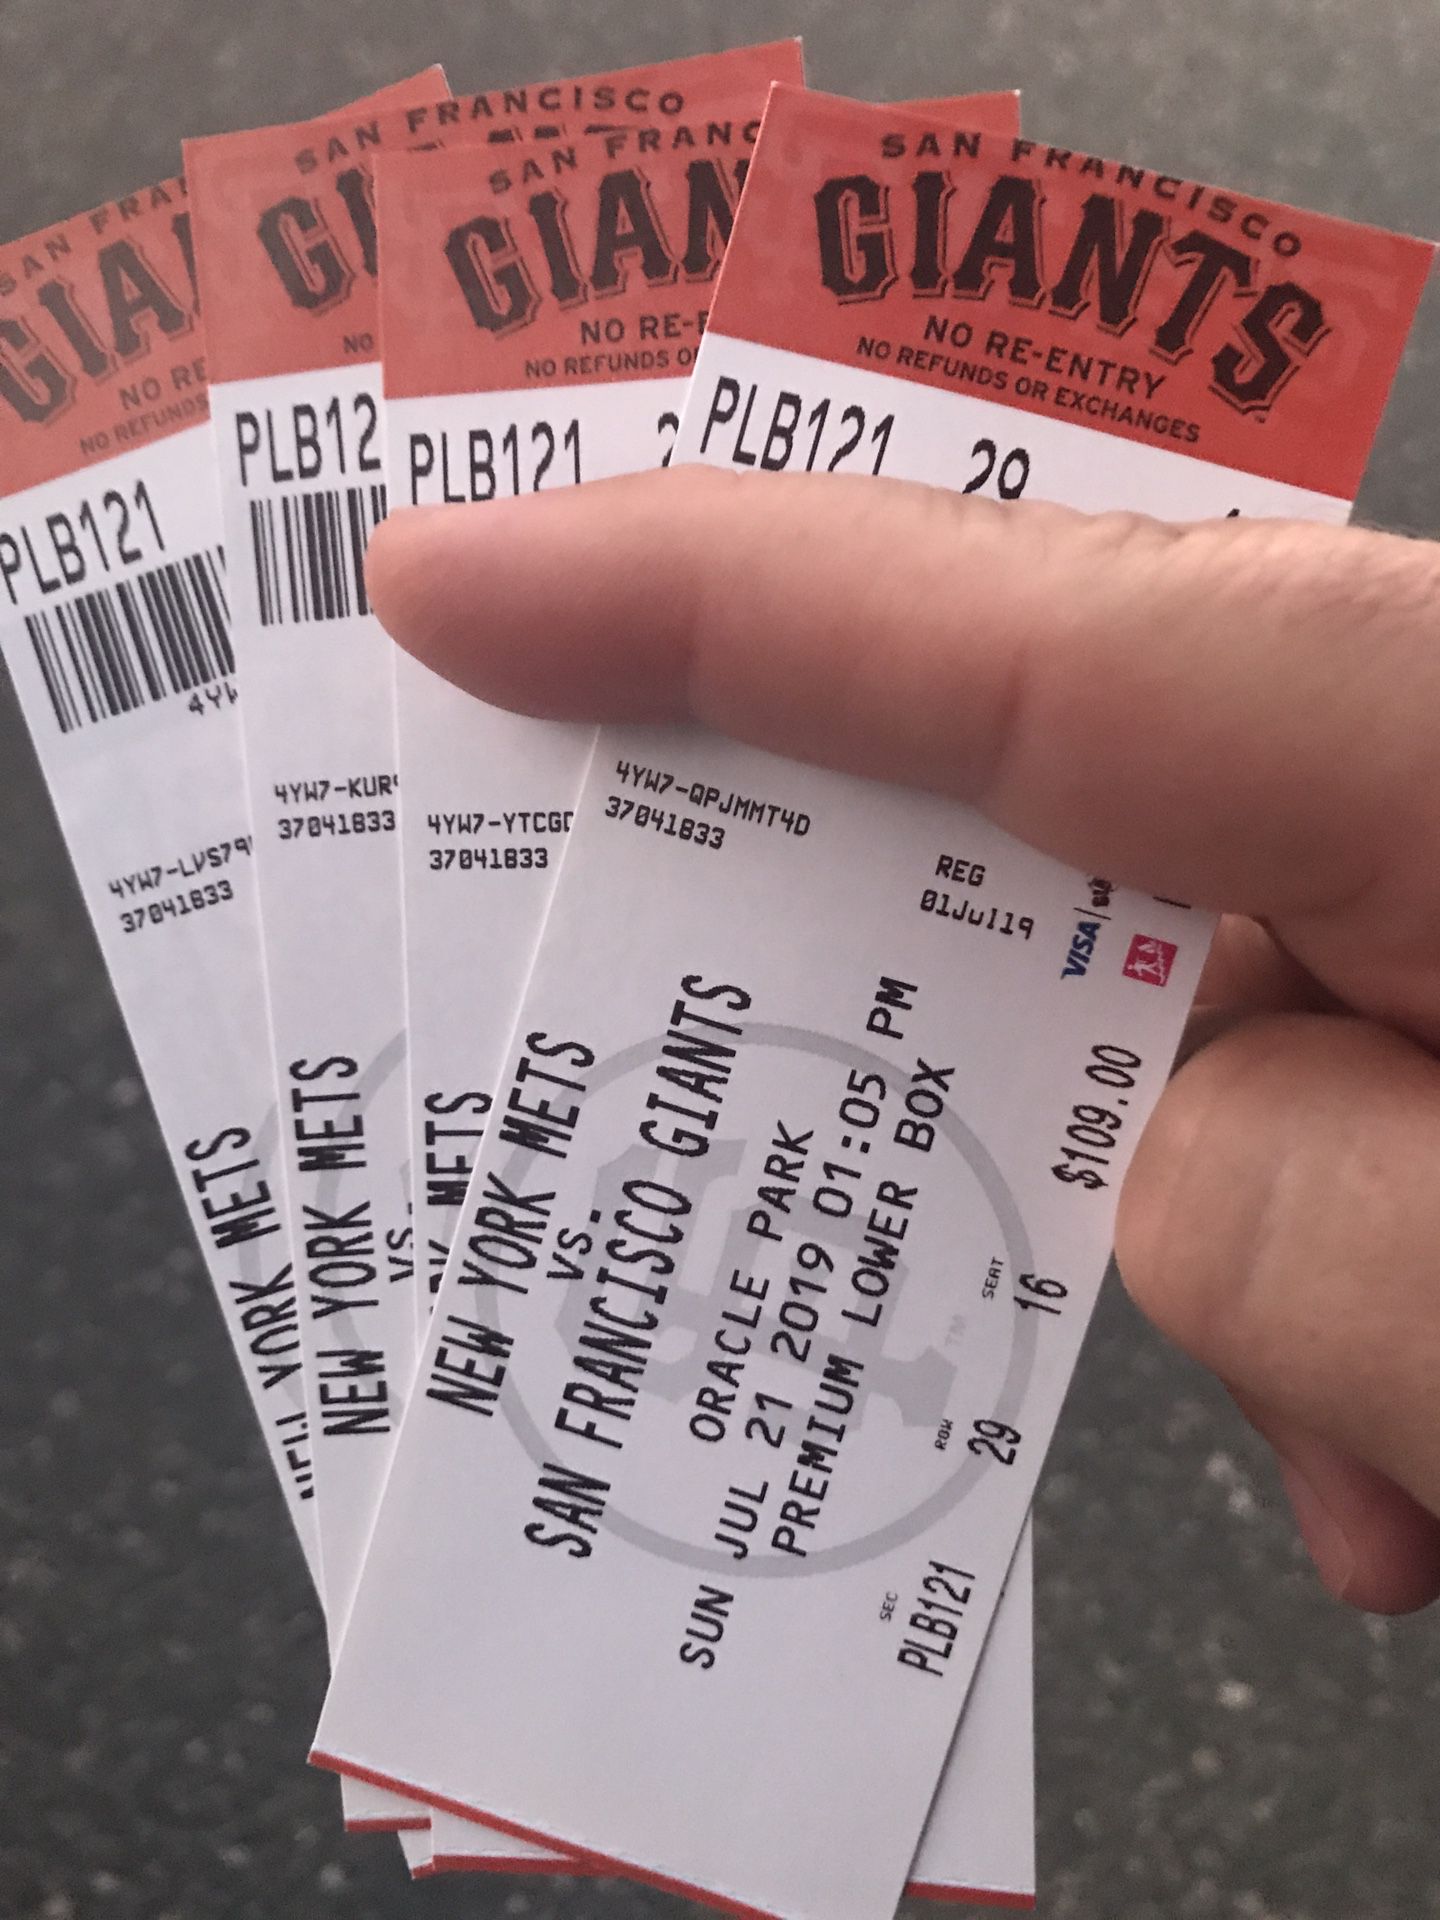 SF Giants vs NY Mets - Sunday July 21 @ 1pm